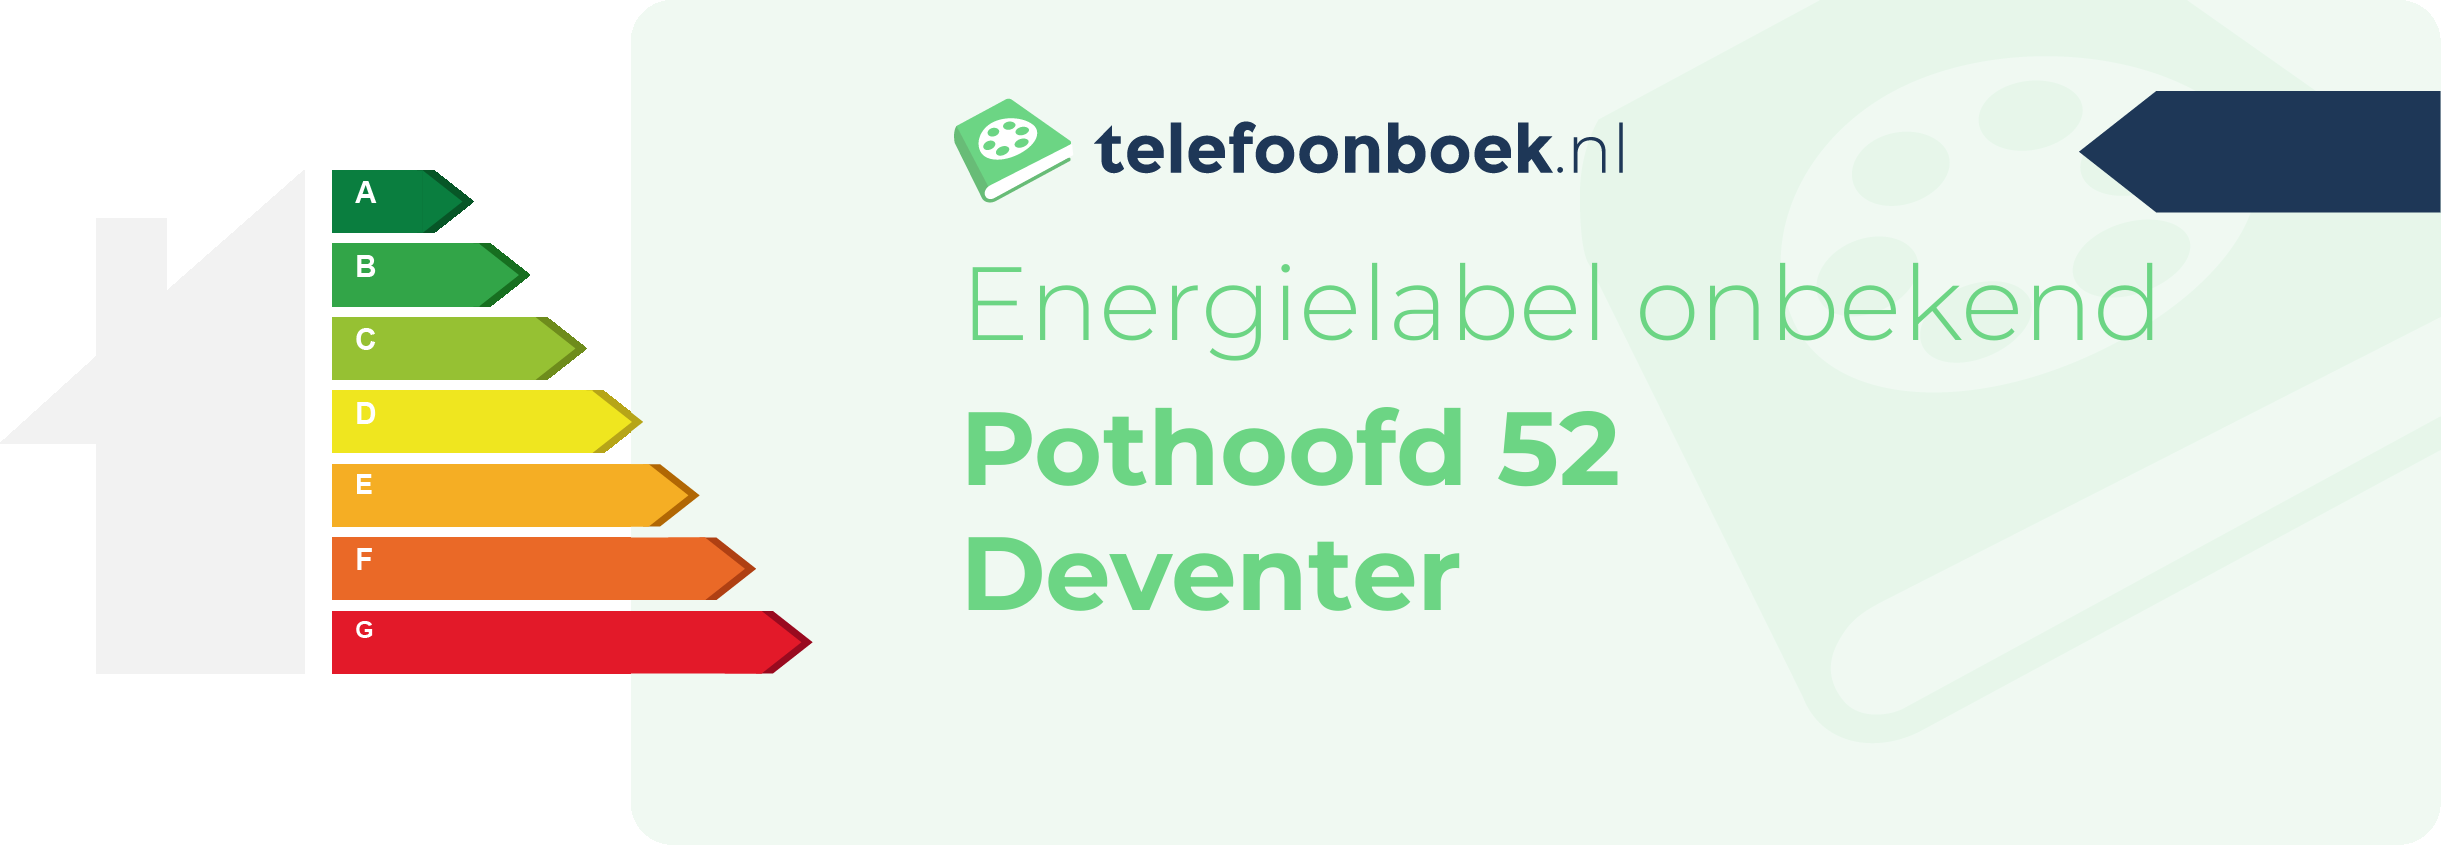 Energielabel Pothoofd 52 Deventer